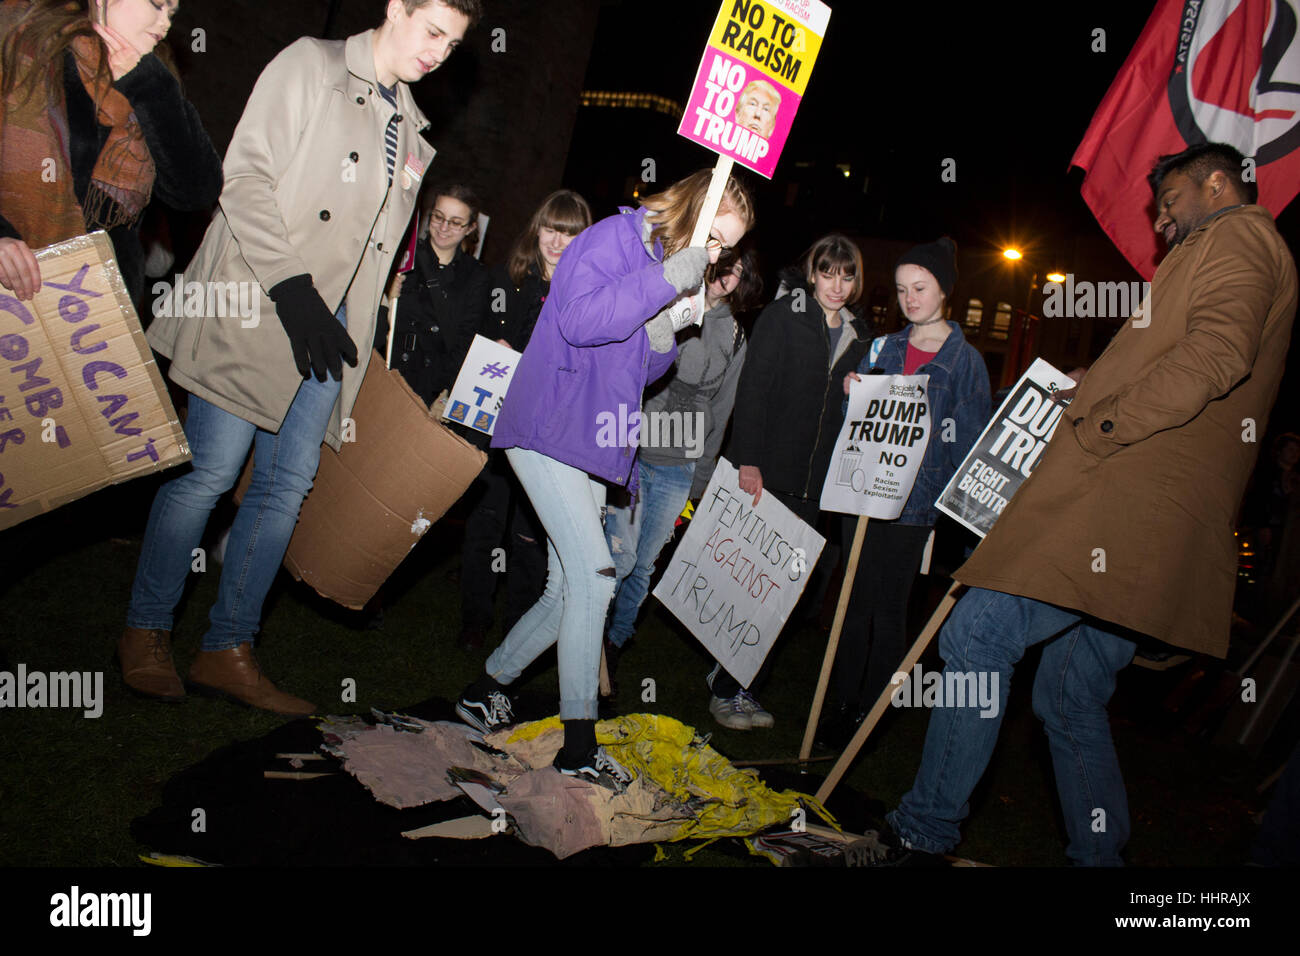 Cardiff, Regno Unito. Il 20 gennaio, 2017. I manifestanti al di fuori del Castello di Cardiff, Galles come parte di una dimostrazione contro che incombe il presidente statunitense Donald Trump, organizzato da Stand fino al razzismo. Credito: Aimee mandria/Alamy Live News Foto Stock